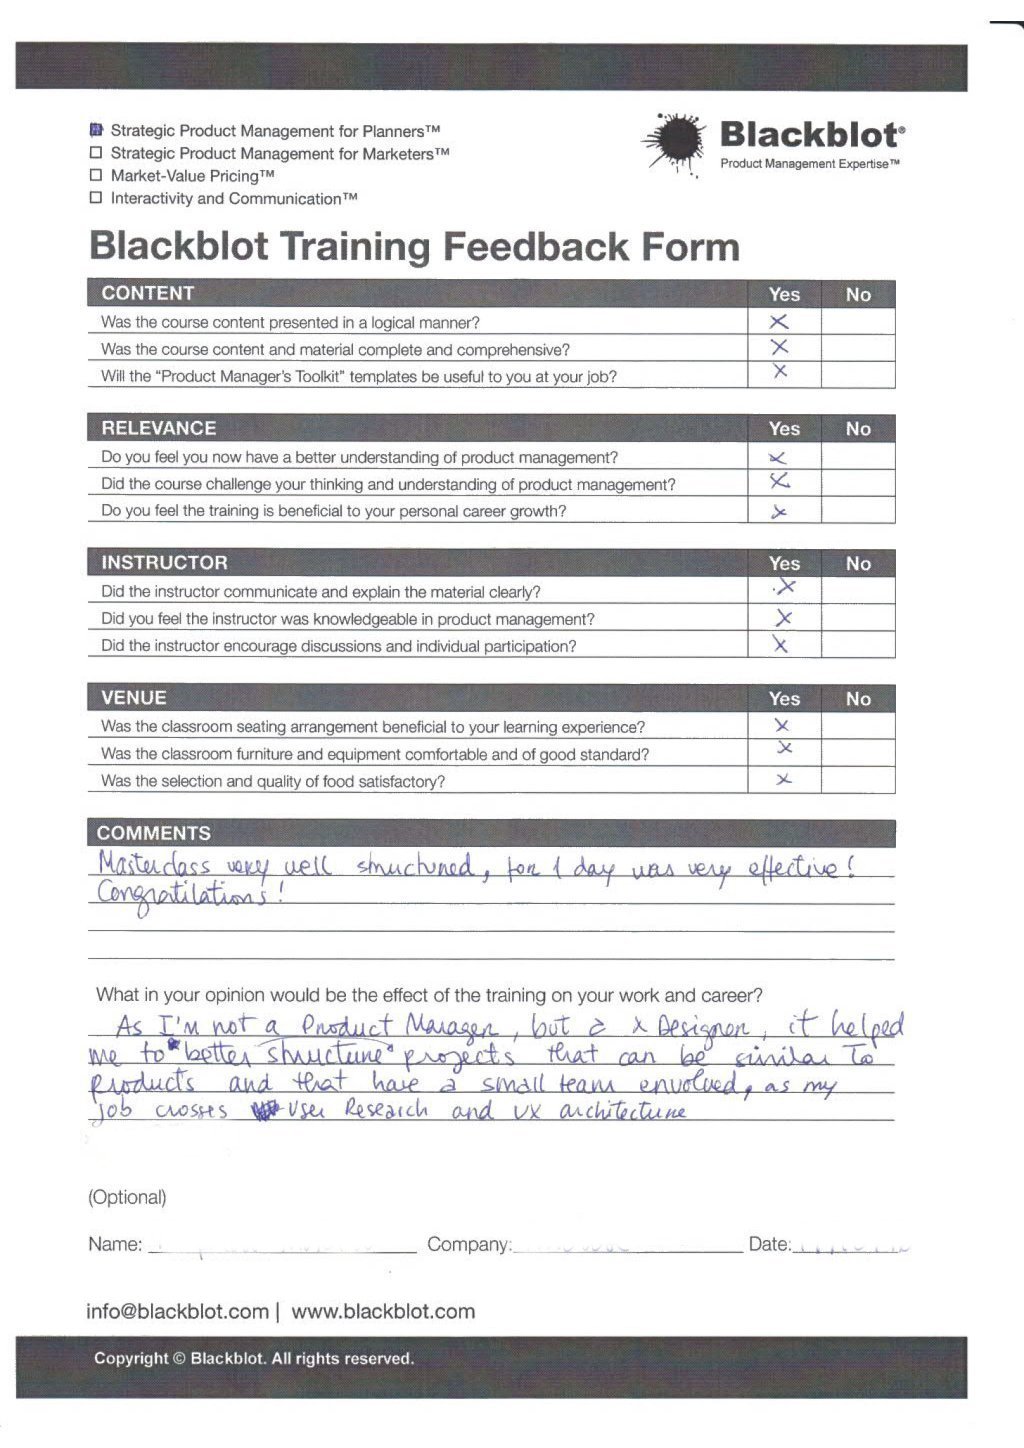 Blackblot: Blackblot_Strategic_Product_Management_Feedback_Form_018.jpg